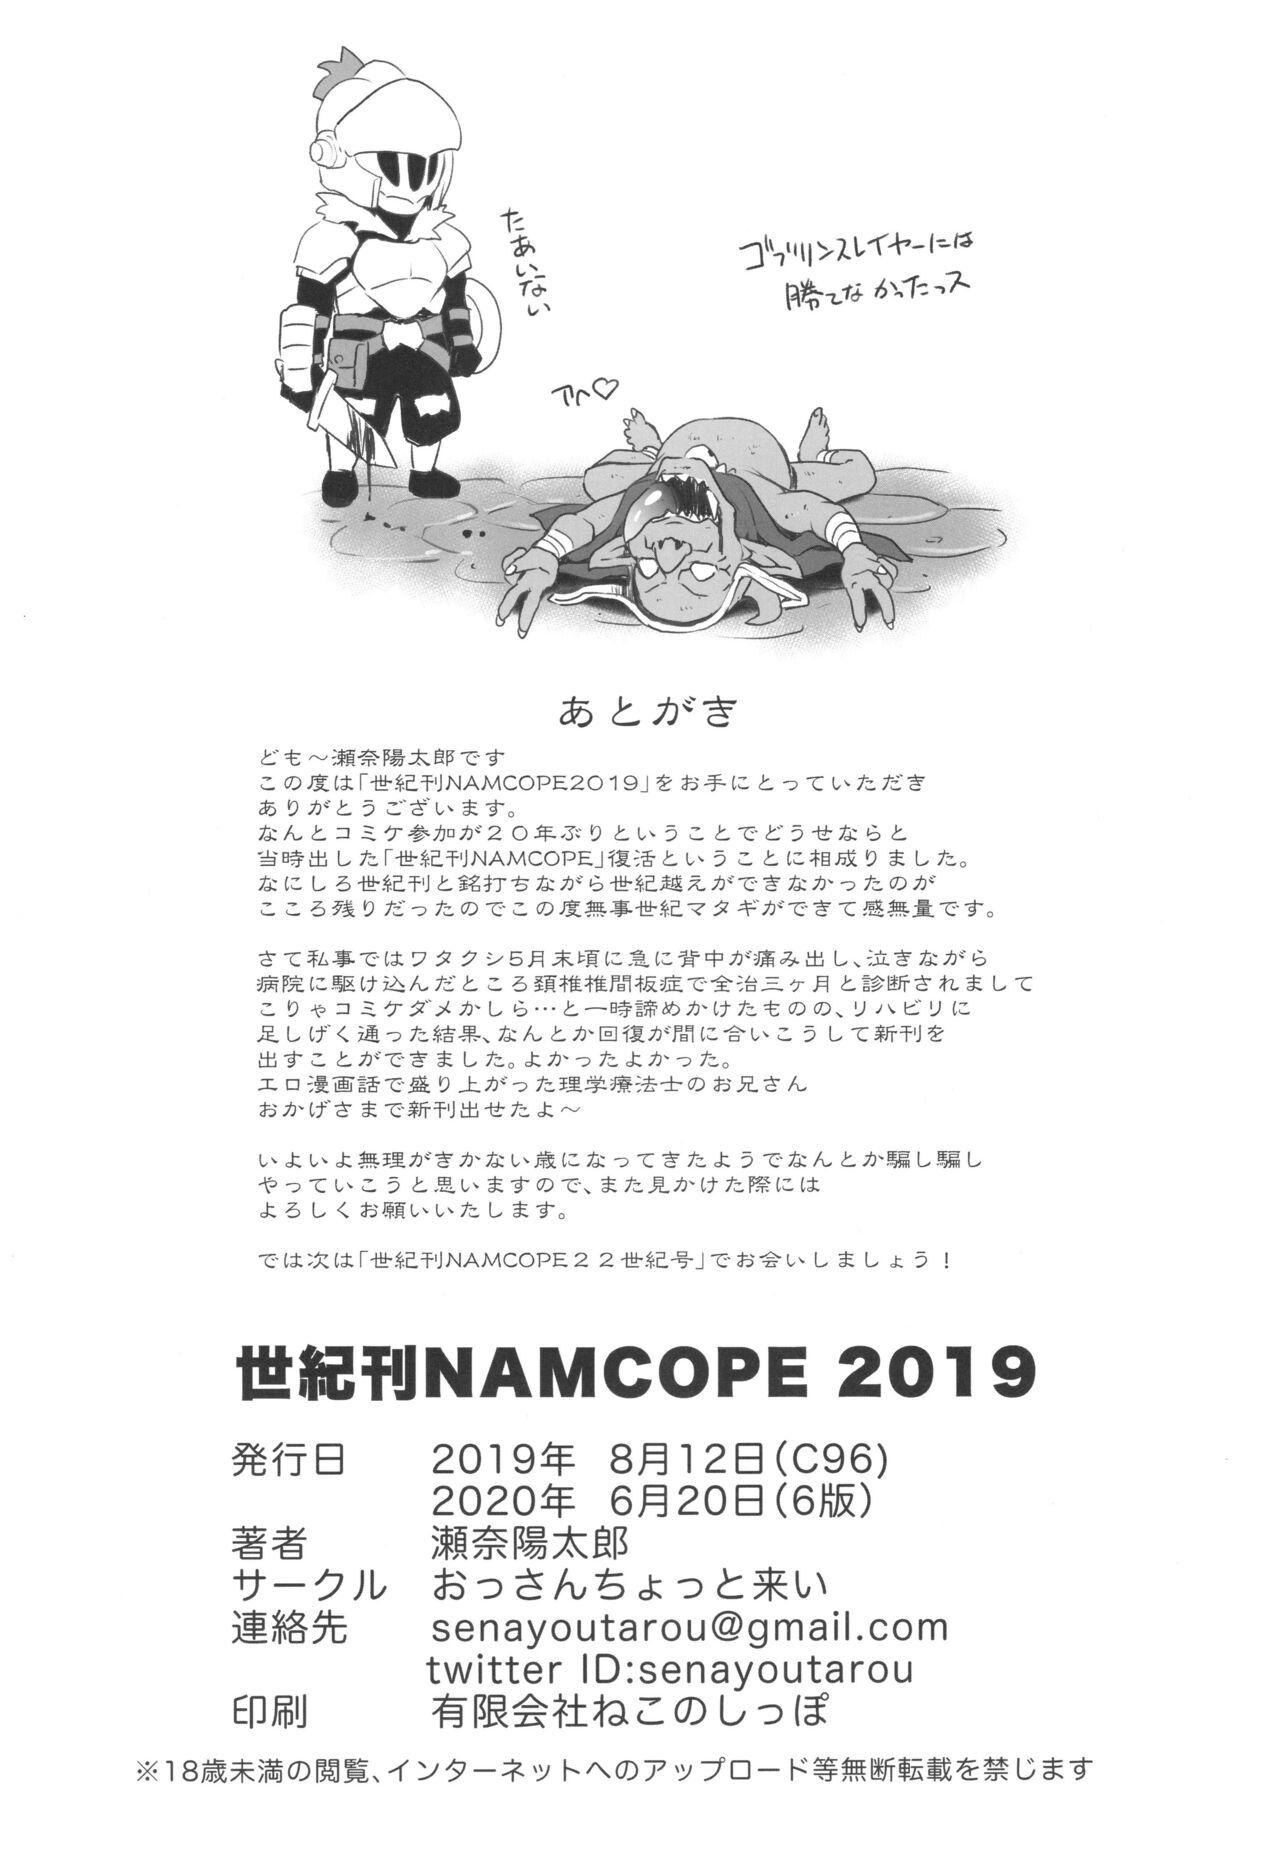 Seiki-kan NAMCOPE 2019 36